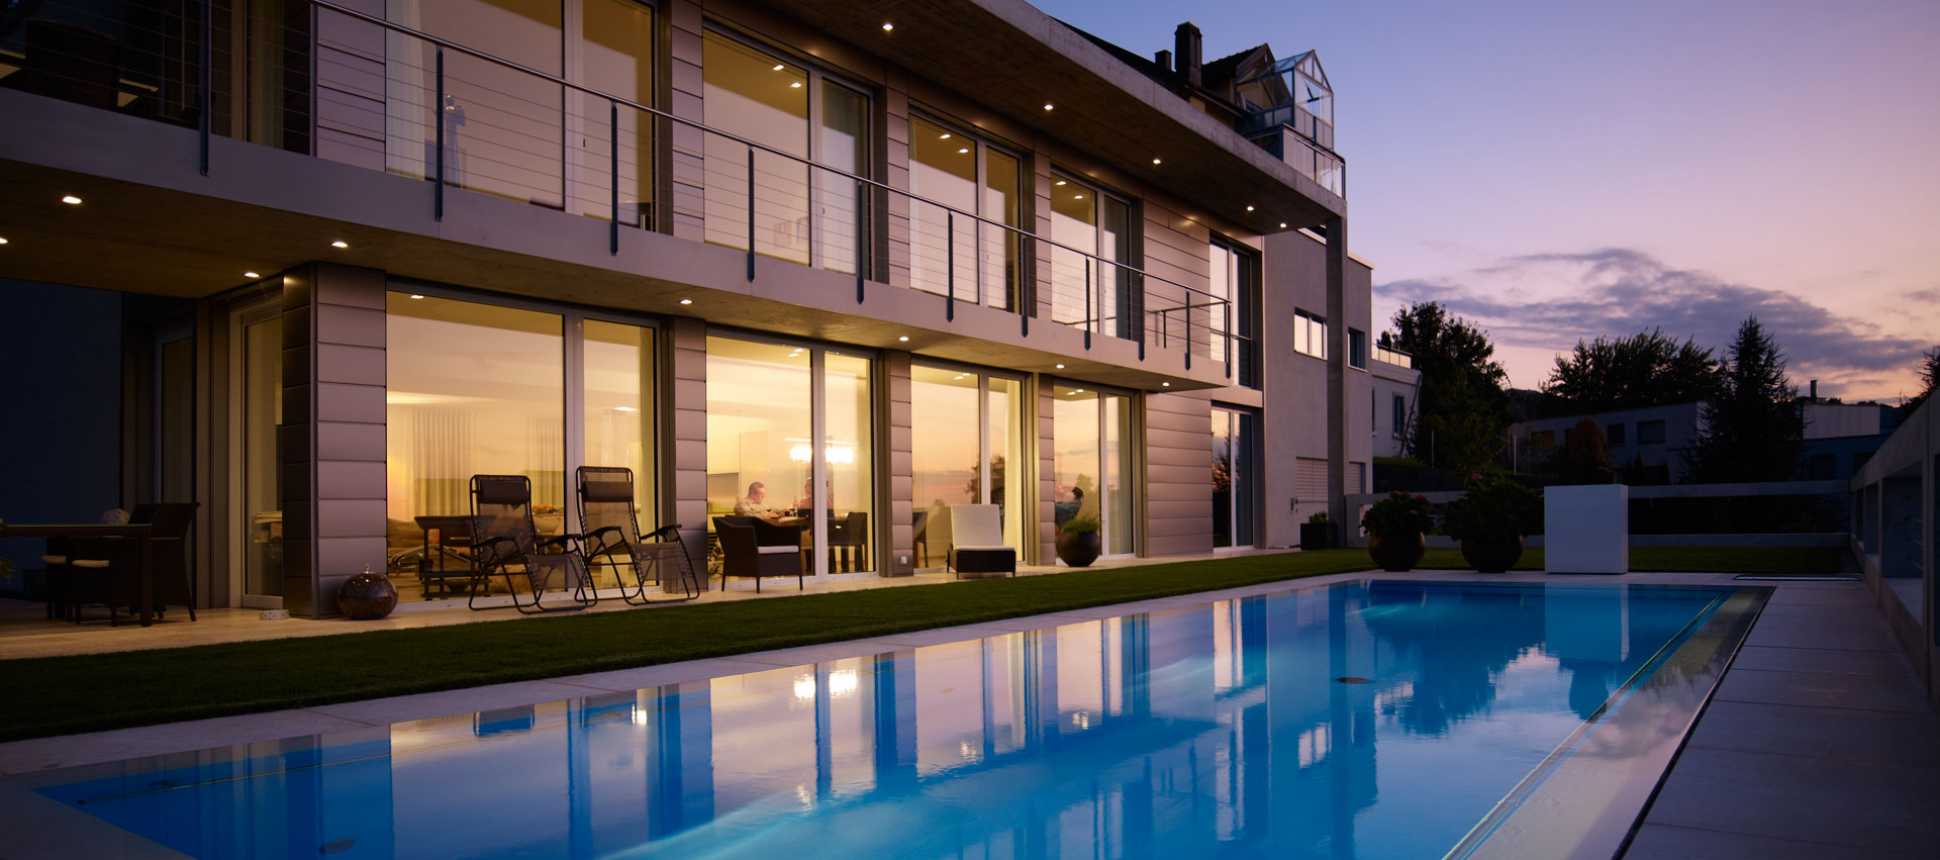 Villa mit Pool beleuchtet